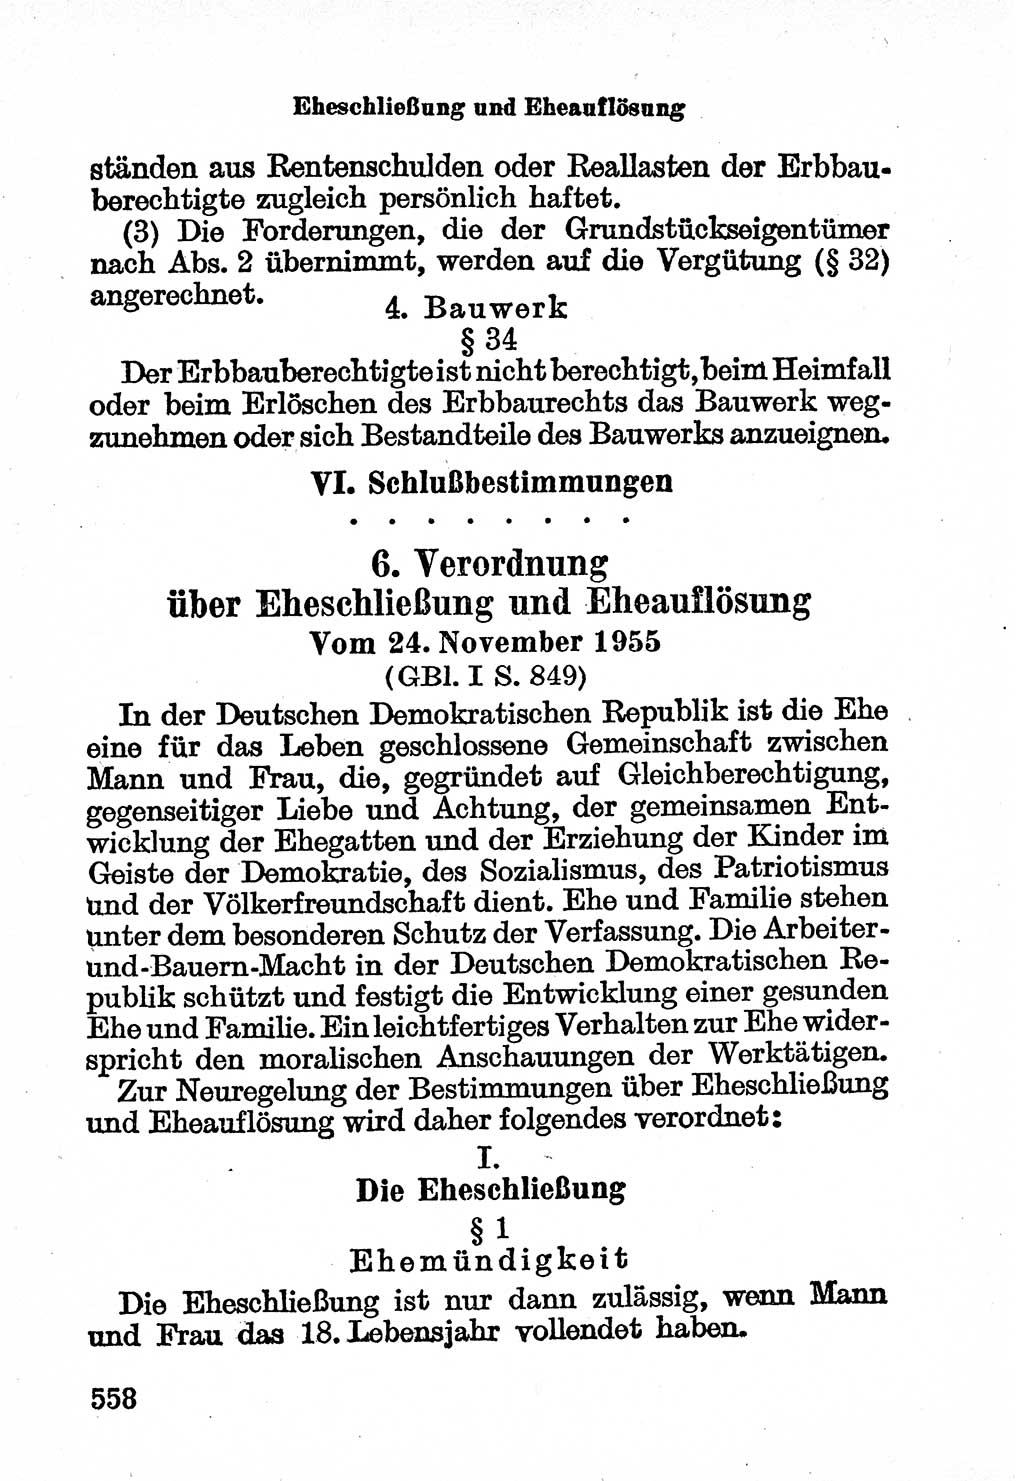 Bürgerliches Gesetzbuch (BGB) nebst wichtigen Nebengesetzen [Deutsche Demokratische Republik (DDR)] 1956, Seite 558 (BGB Nebenges. DDR 1956, S. 558)